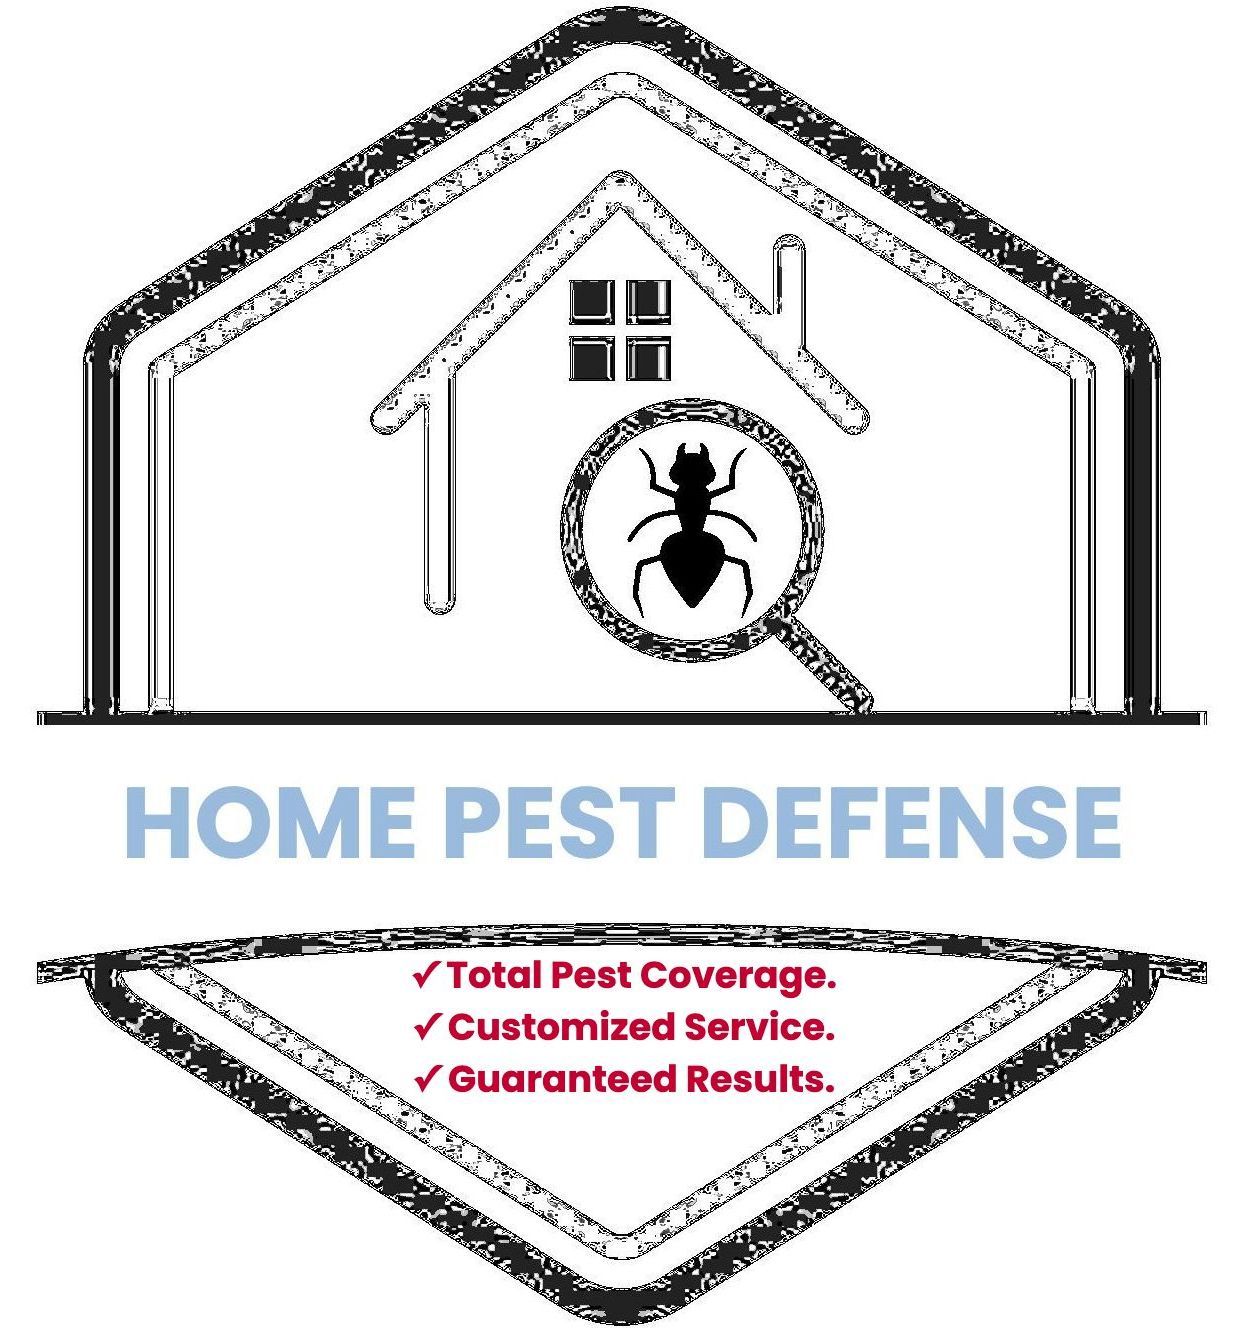 Home pest defense in Newton, Massachusetts. 